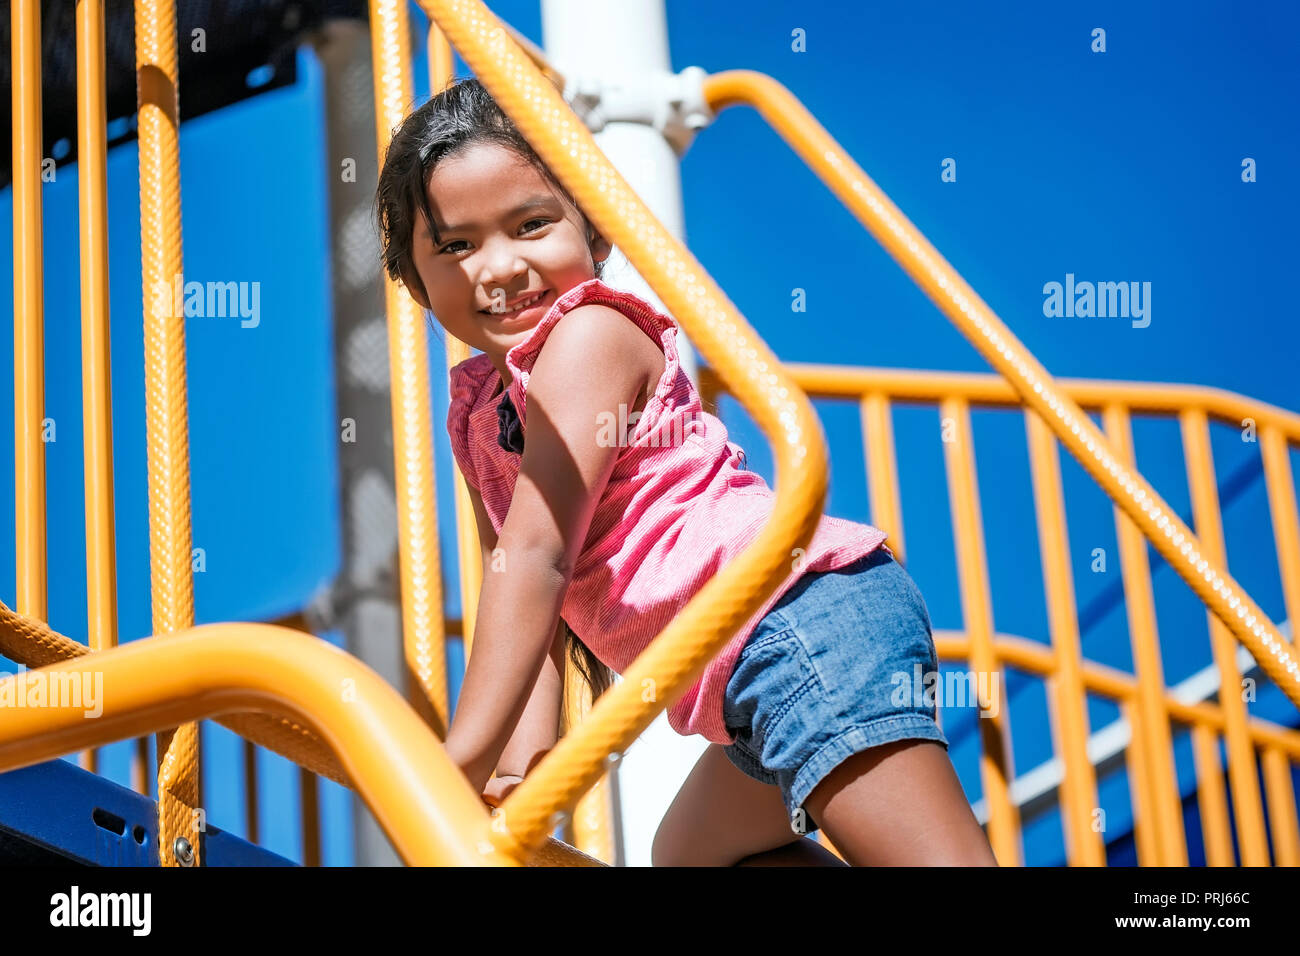 Linda chica subiendo un colorido parque infantil usando las manos y los pies con una sonrisa en su rostro, mostrando excelentes habilidades motoras Foto de stock